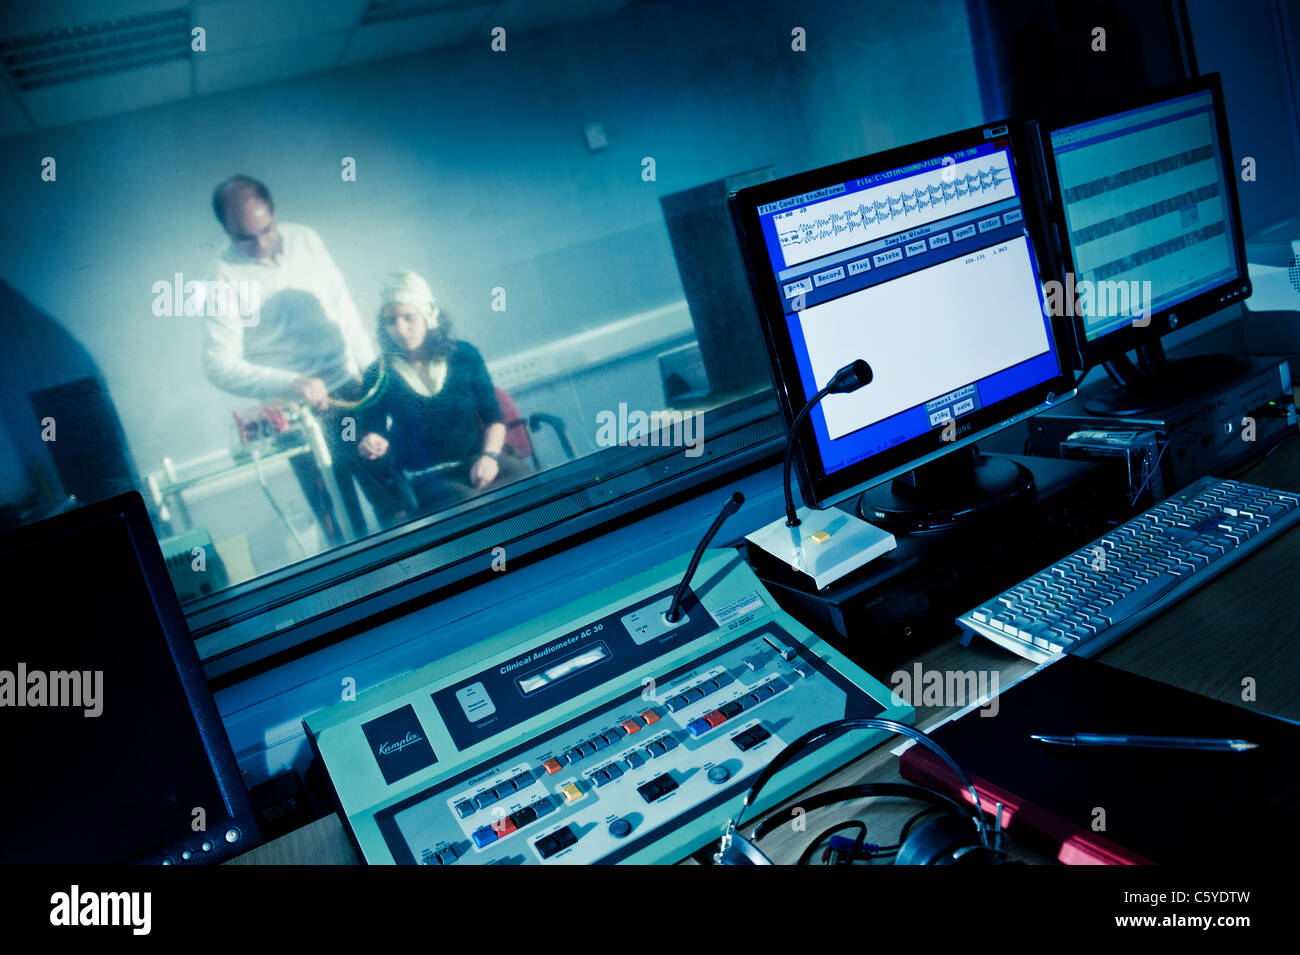 L'audiologie et de la surdité cabine de son laboratoire d'expérimentation avec des contrôles et des écrans d'ordinateur en premier plan l'objet portant des électrodes Banque D'Images